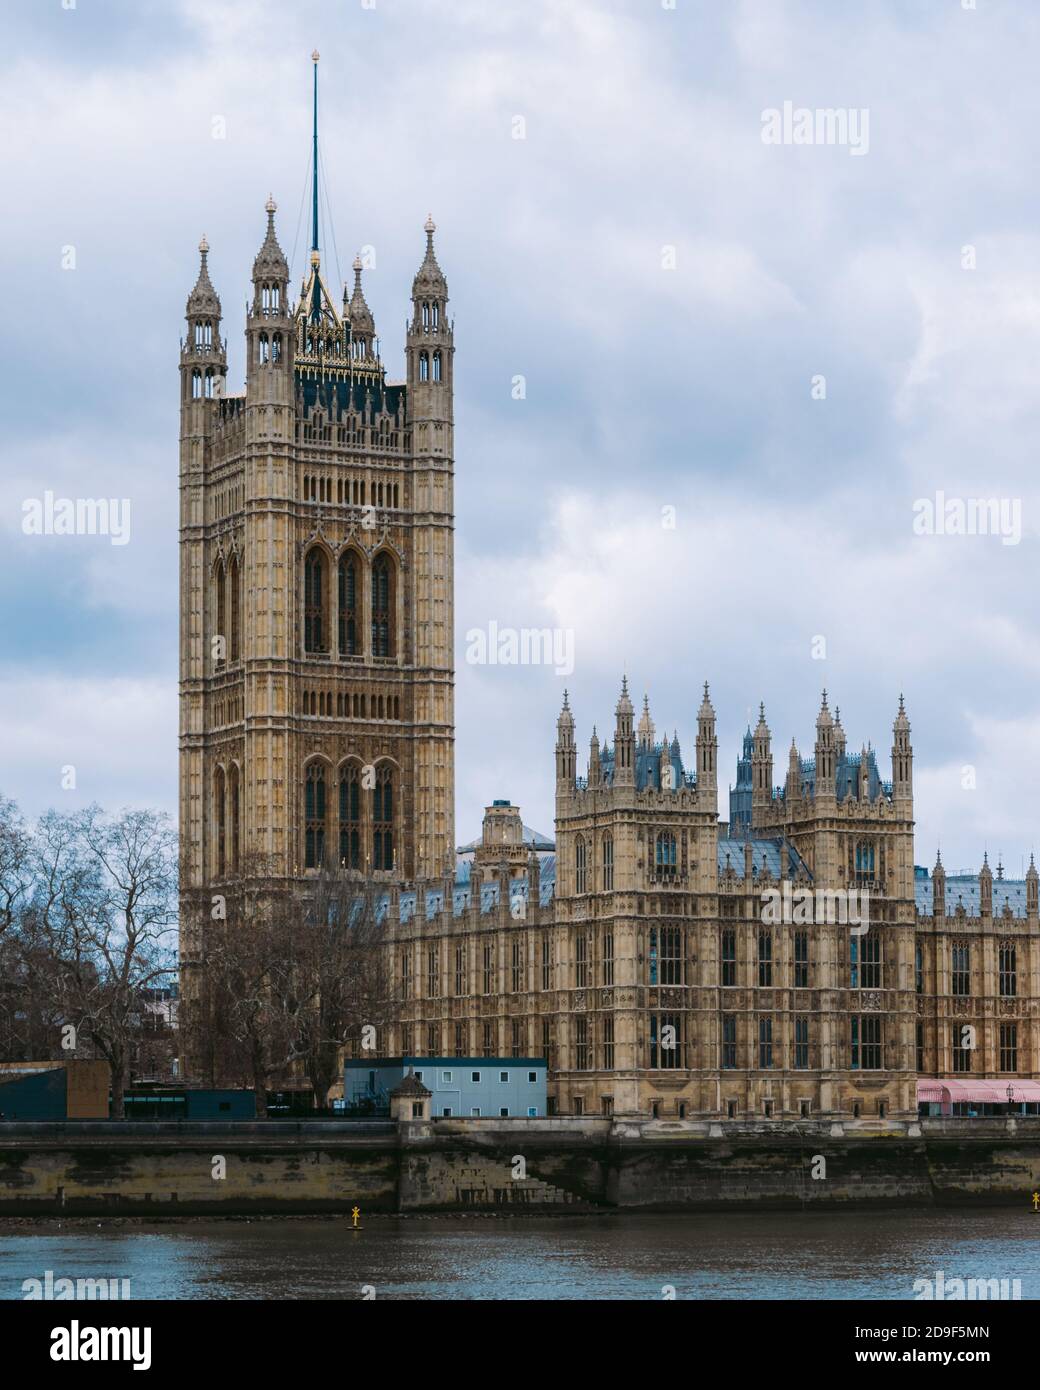 Chambre du parlement, Londres, Royaume-Uni. Palais de Westminster. Pont de  Westminster. Journée nuageux à Londres. Attraction touristique à Londres  Photo Stock - Alamy